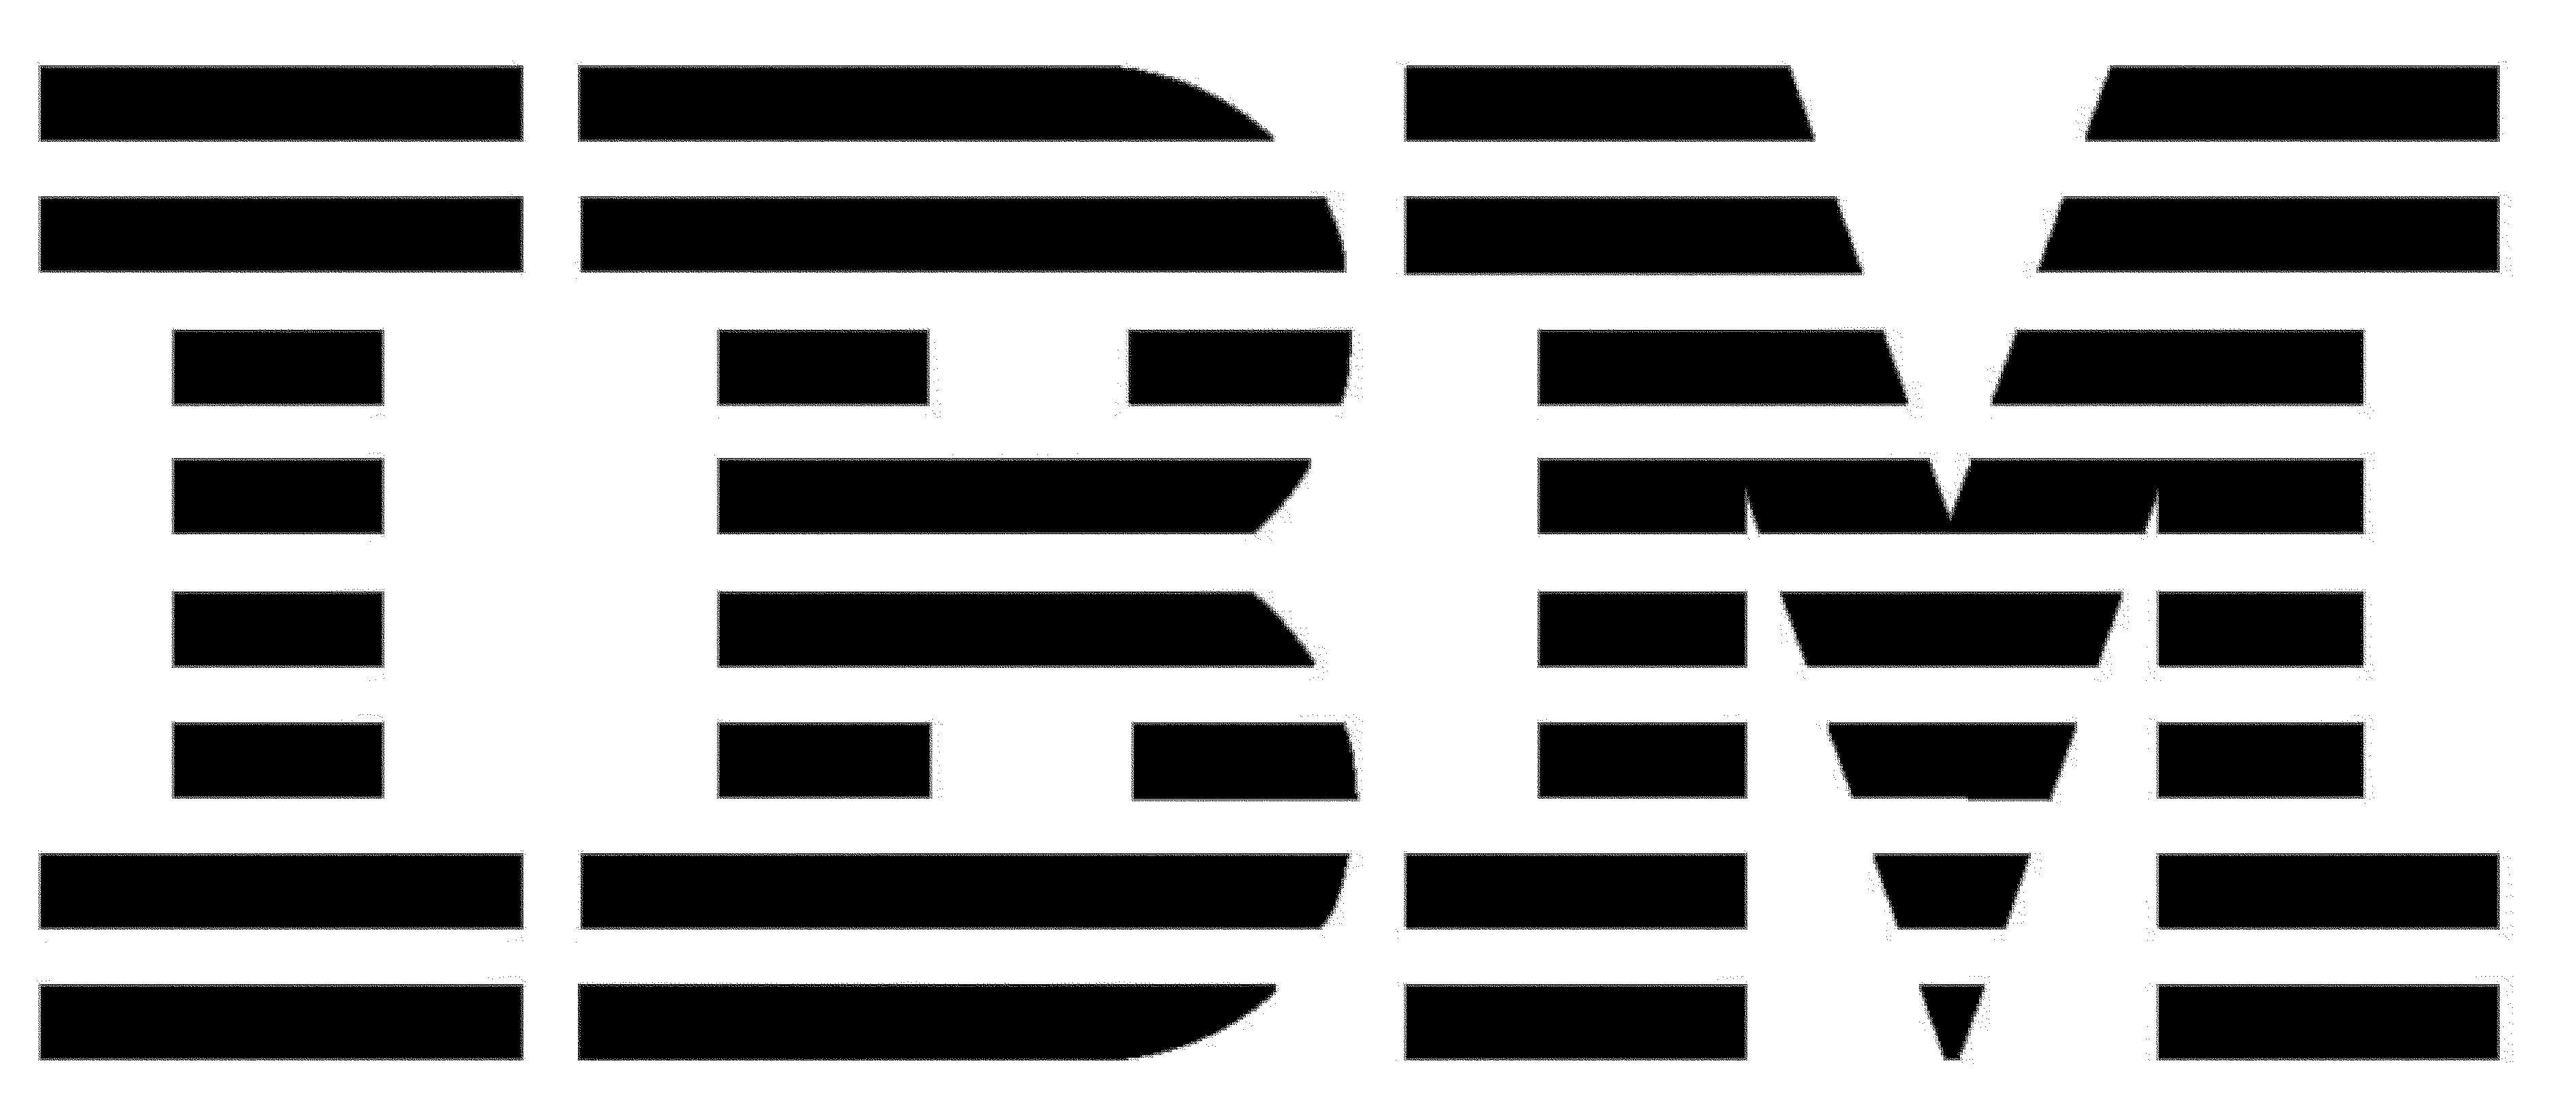 New IBM Logo - IBM Logo】| IBM Logo PNG Vector Design Free Download